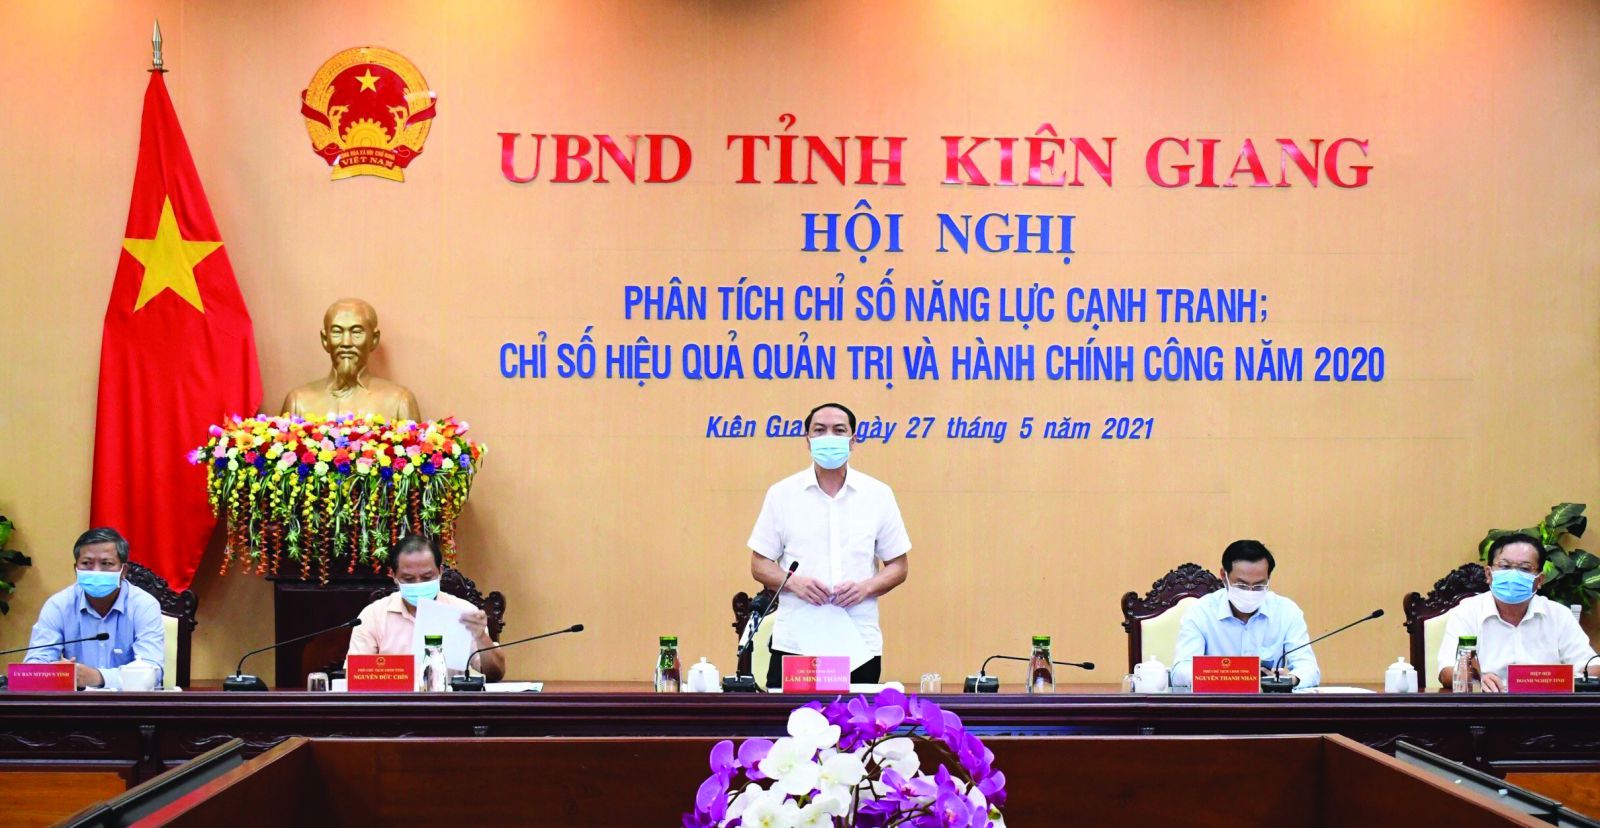  Ông Lâm Minh Thành, Chủ tịch UBND tỉnh Kiên Giang phát biểu chỉ đạo tại Hội nghị